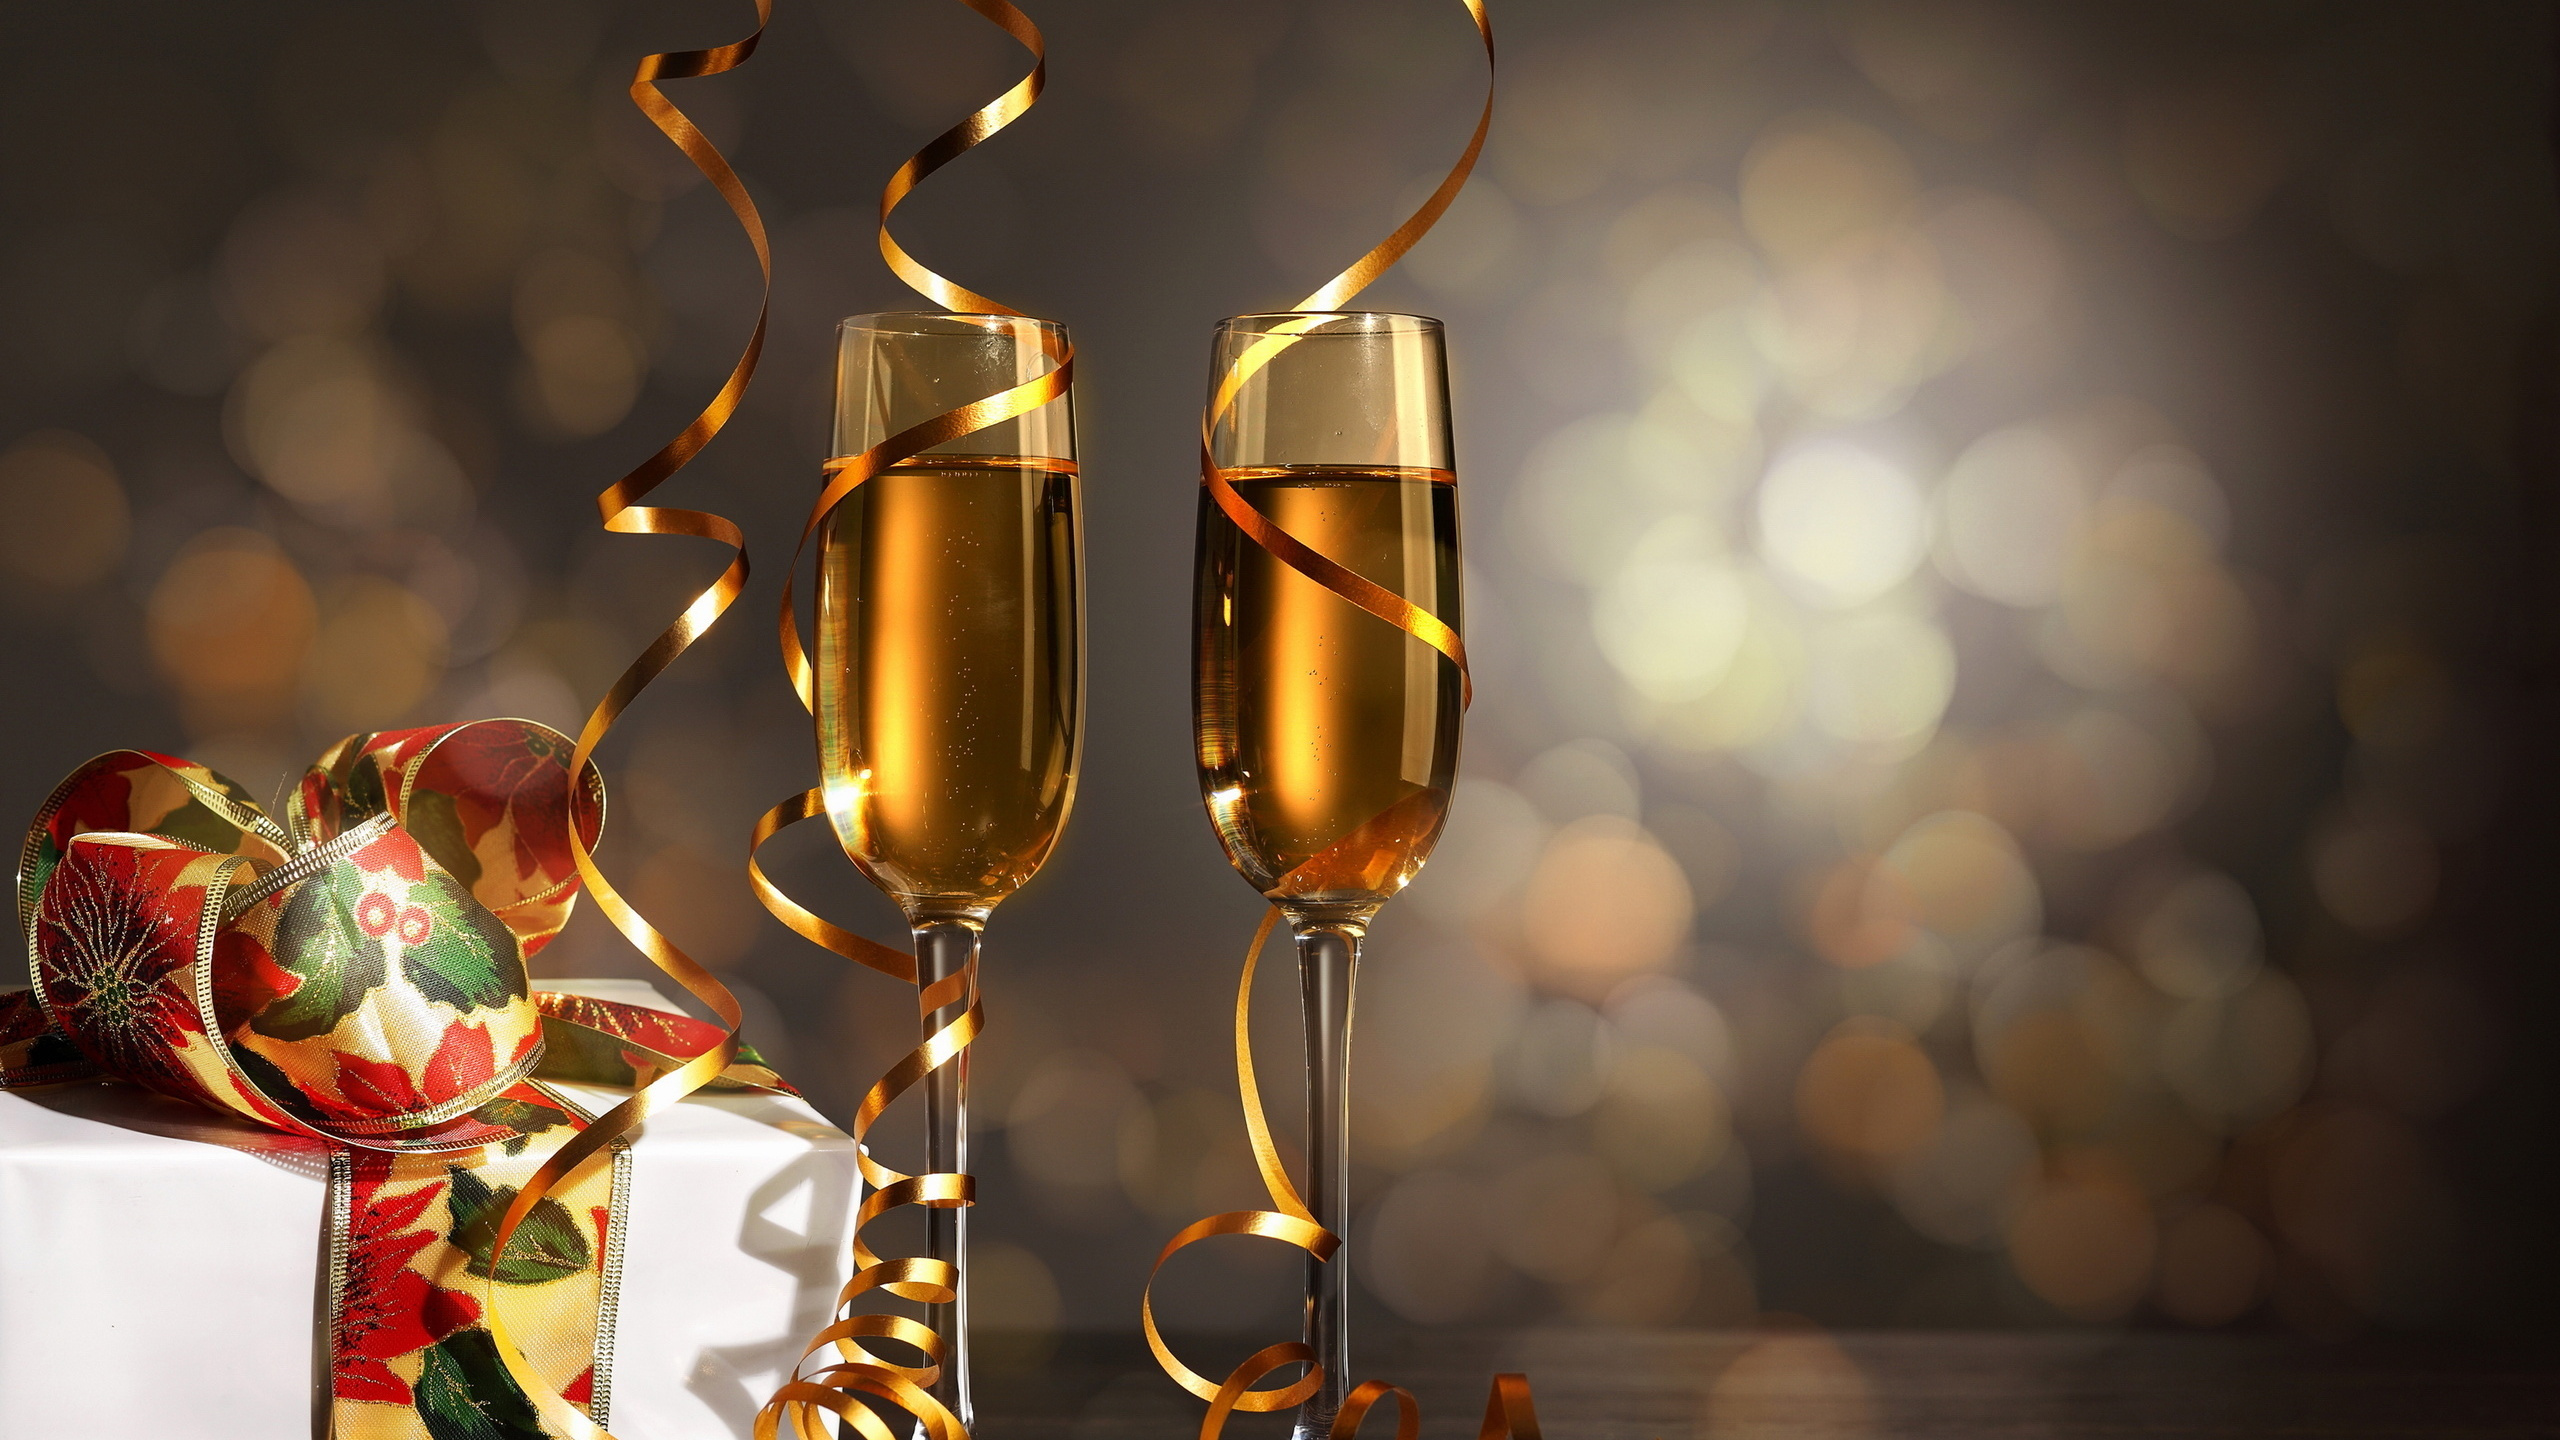 香槟, 新的一年, 葡萄酒, 生日, 高脚杯香槟 壁纸 2560x1440 允许